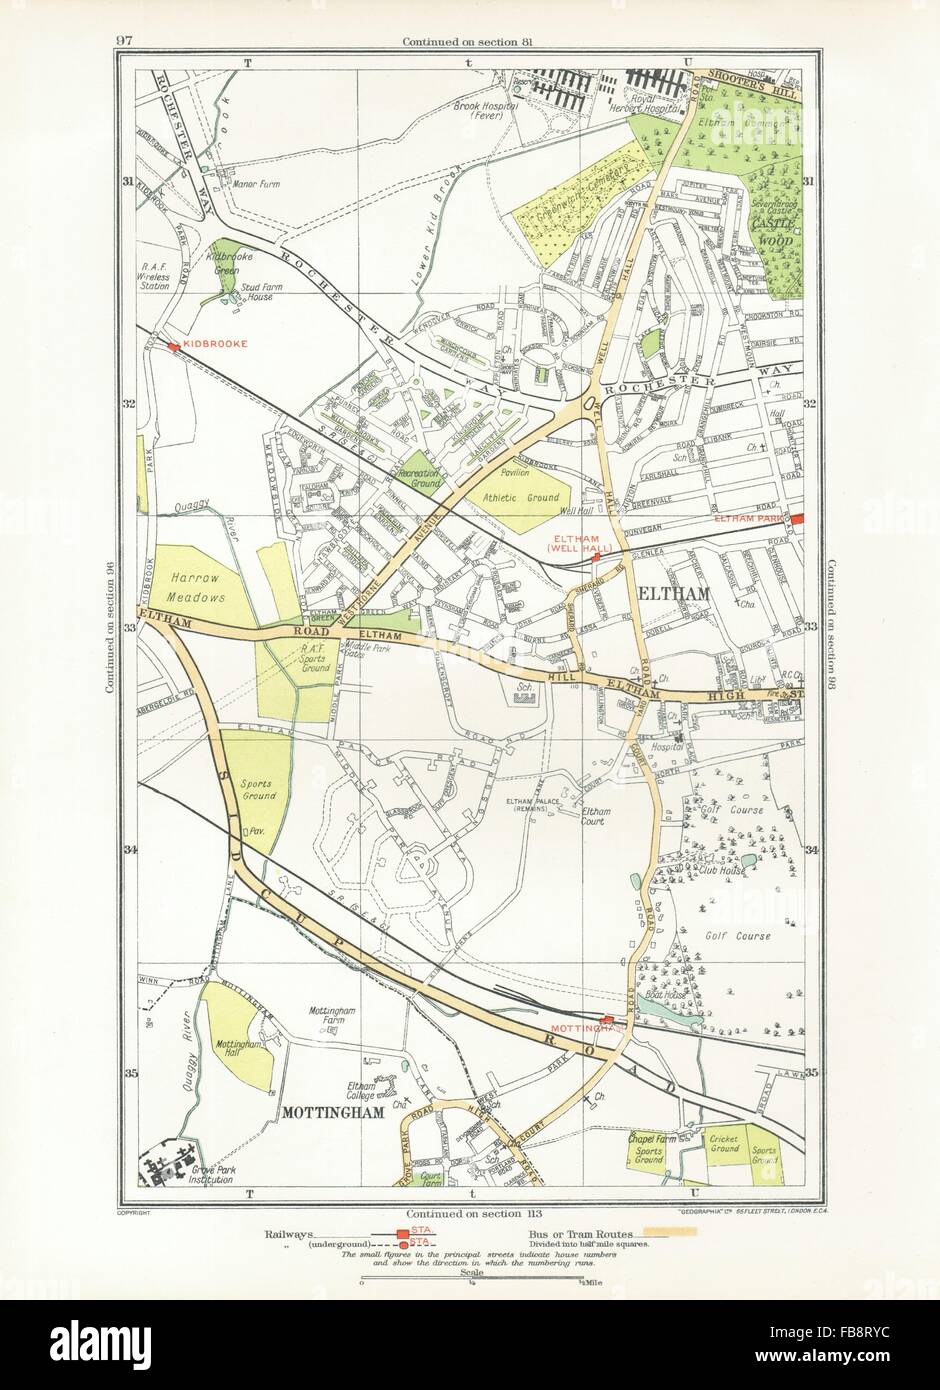 Beauraing. Mottingham, Kidbrooke, Shooter's Hill, Eltham Park, parc de l'avertisseur sonore, carte 1933 Banque D'Images